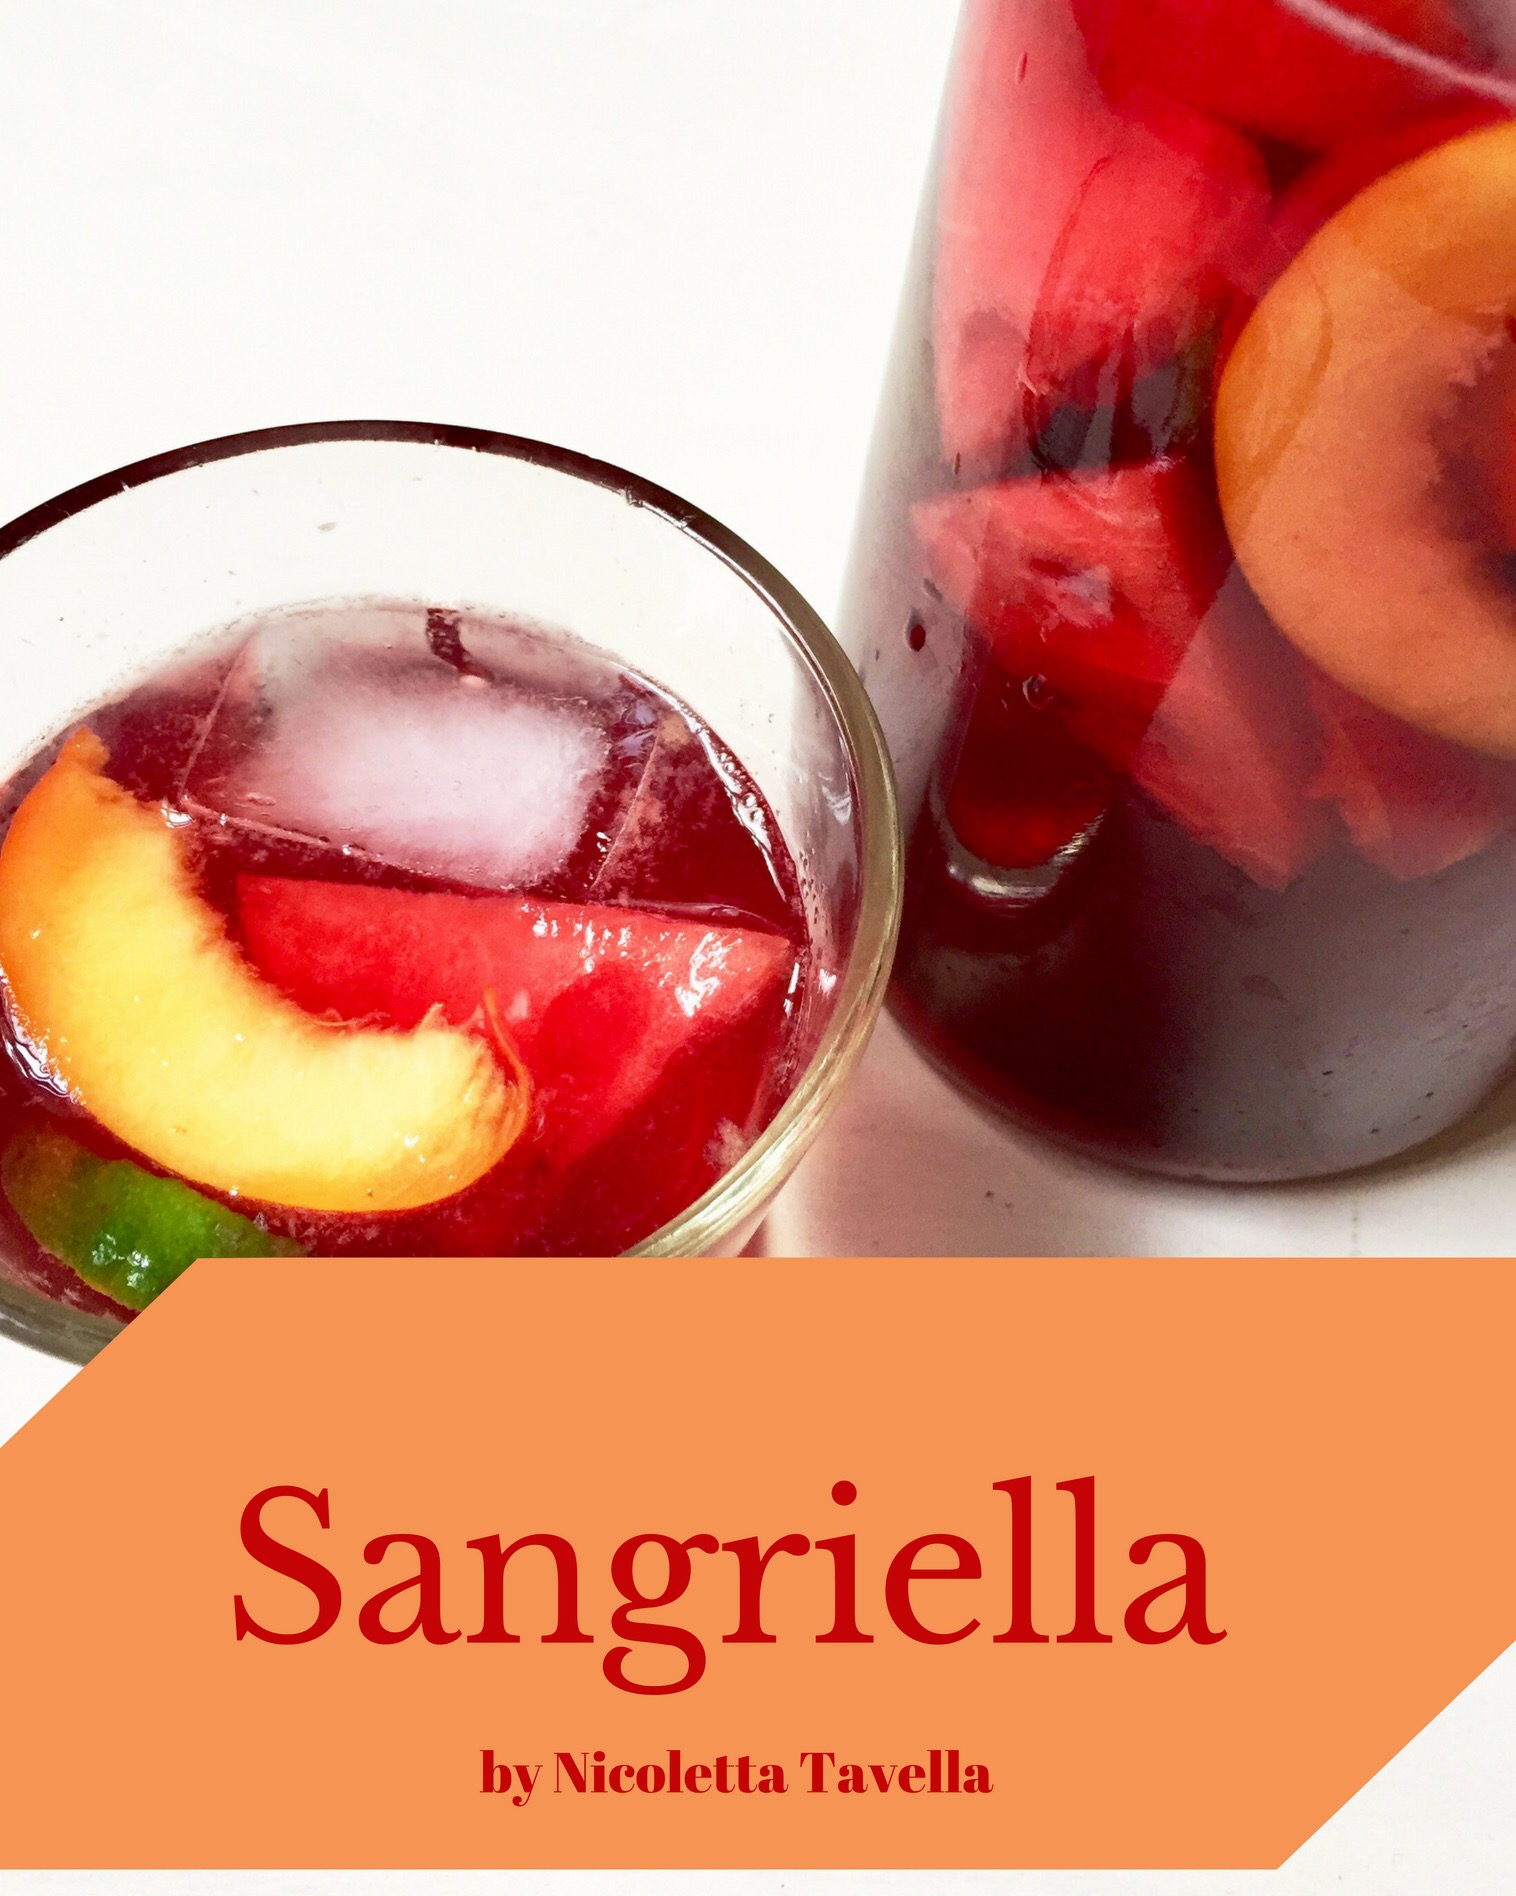 Sangriella cocktail